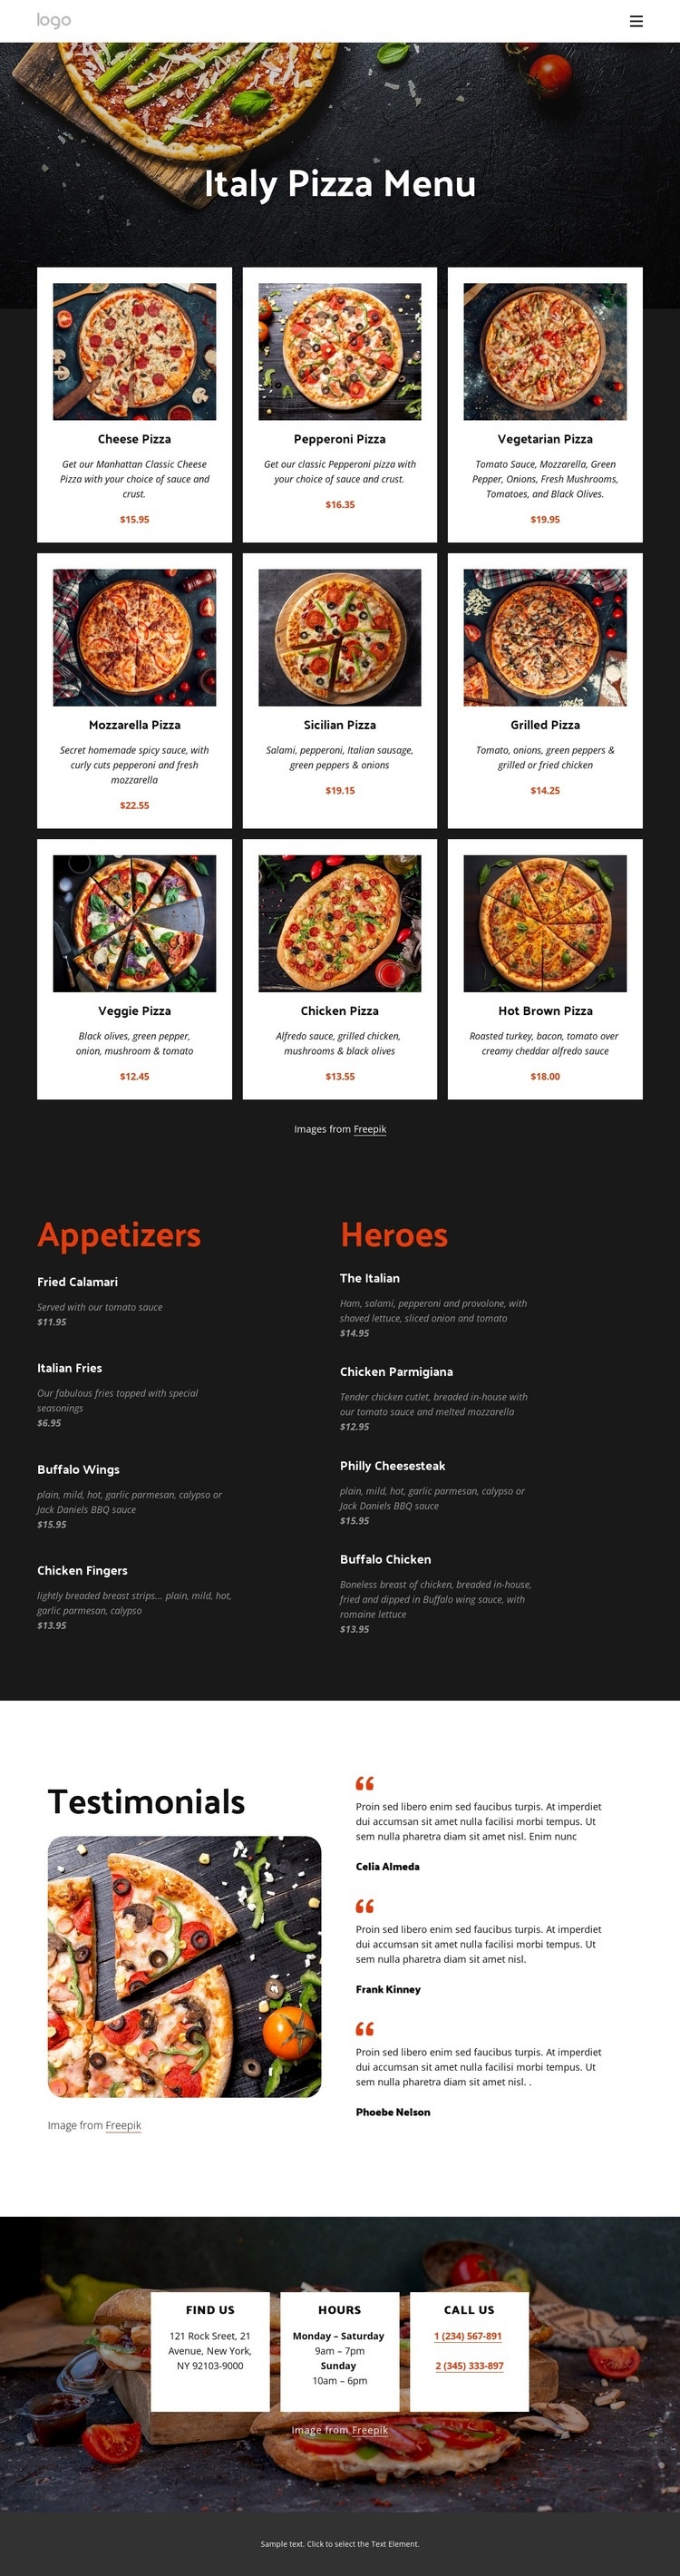 Our pizza menu Web Page Design